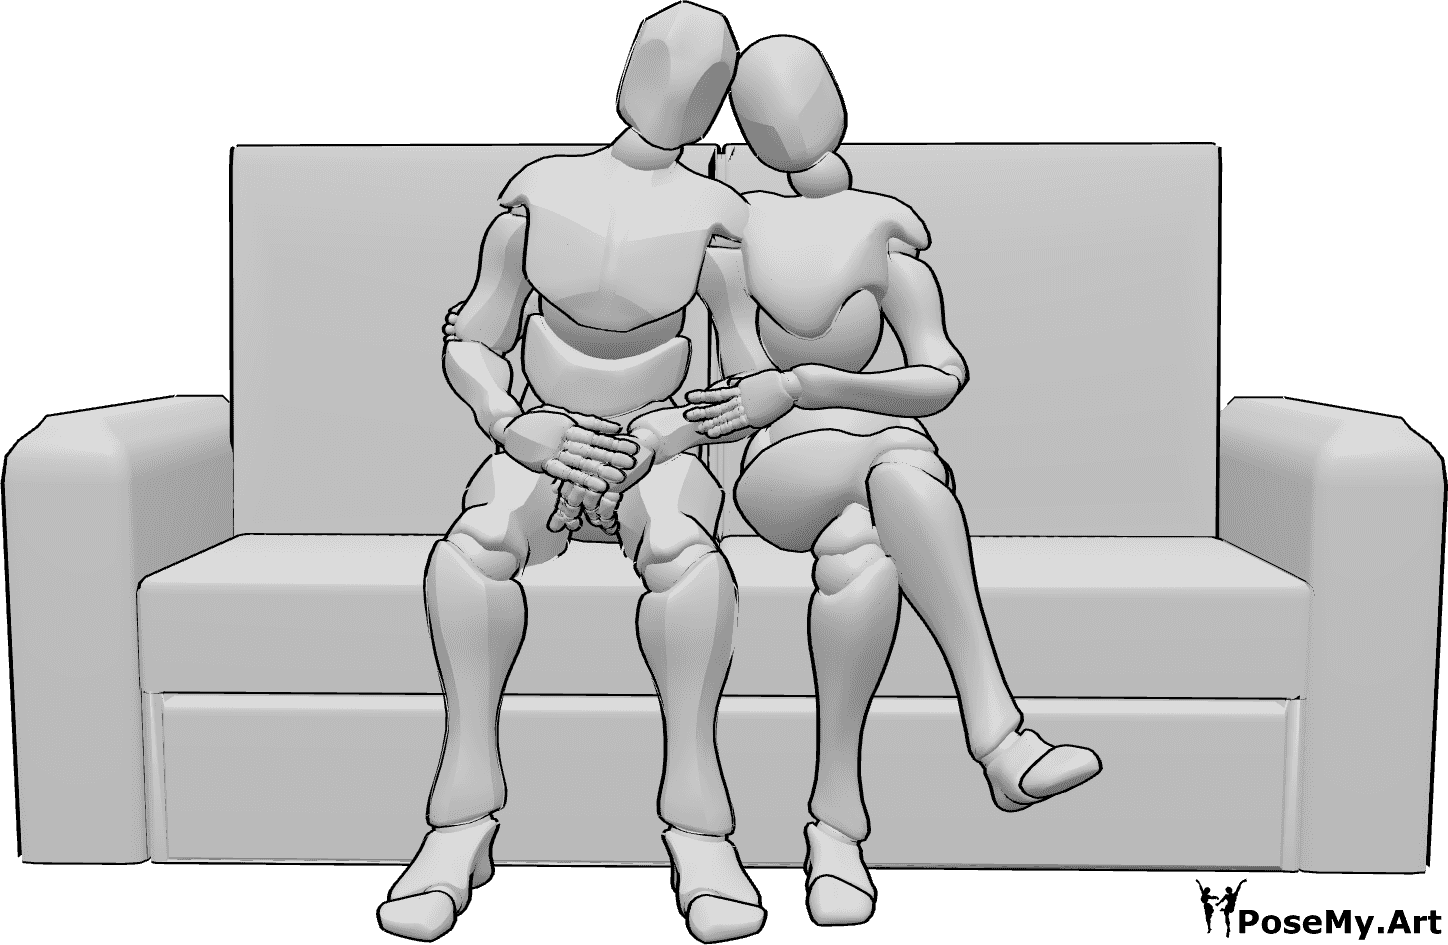 Riferimento alle pose- Coppia romantica seduta in posa - Coppia di donne e uomini seduti, posa della donna che abbraccia l'uomo